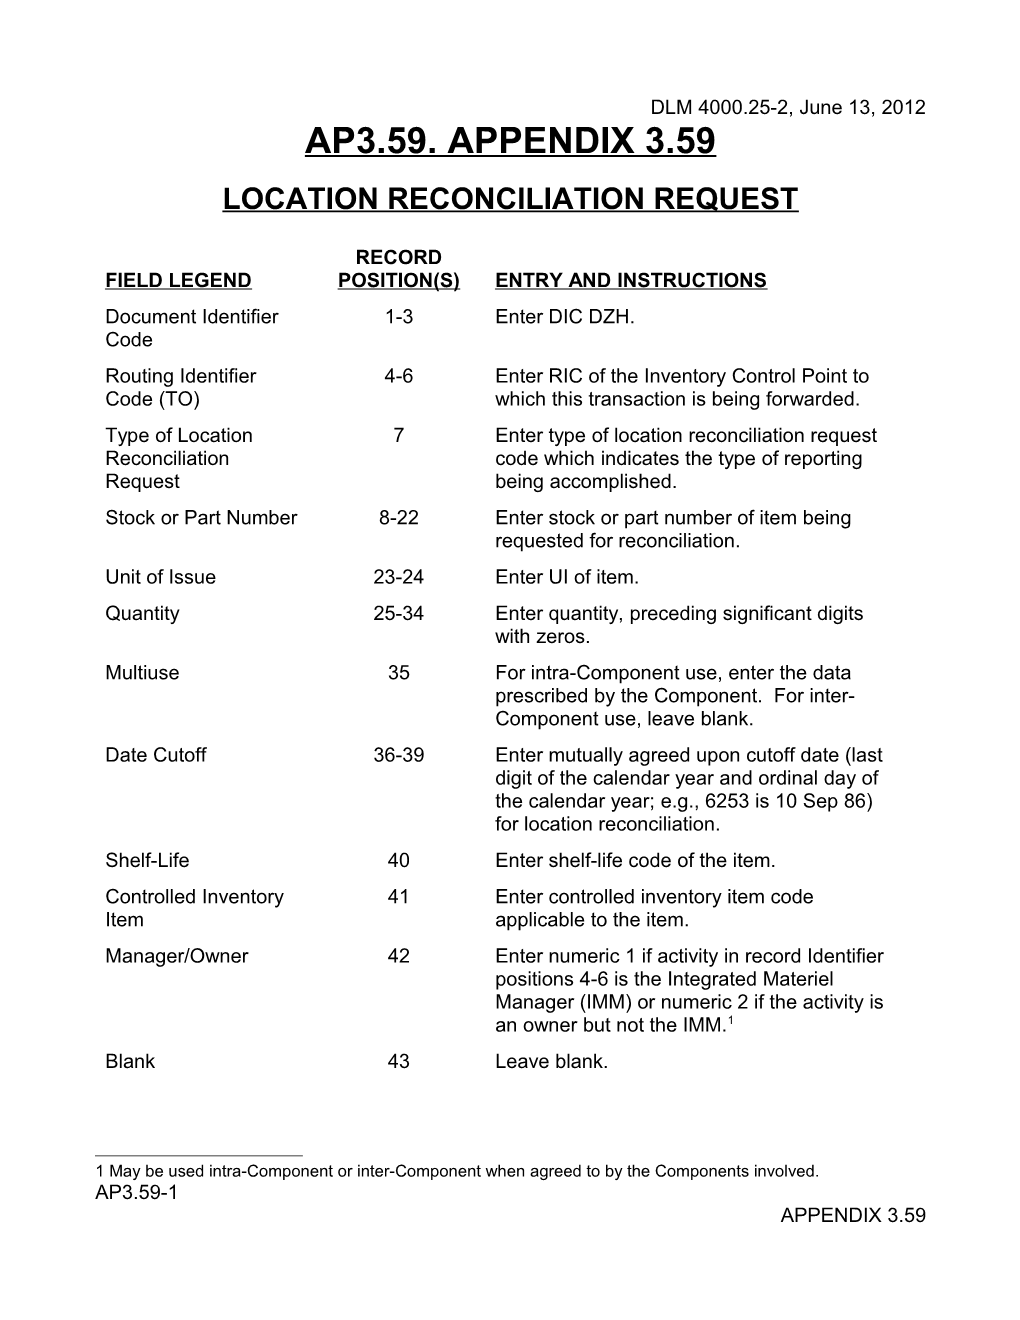 MILSTRAP AP3.59 DZH Location Reconciliation Request